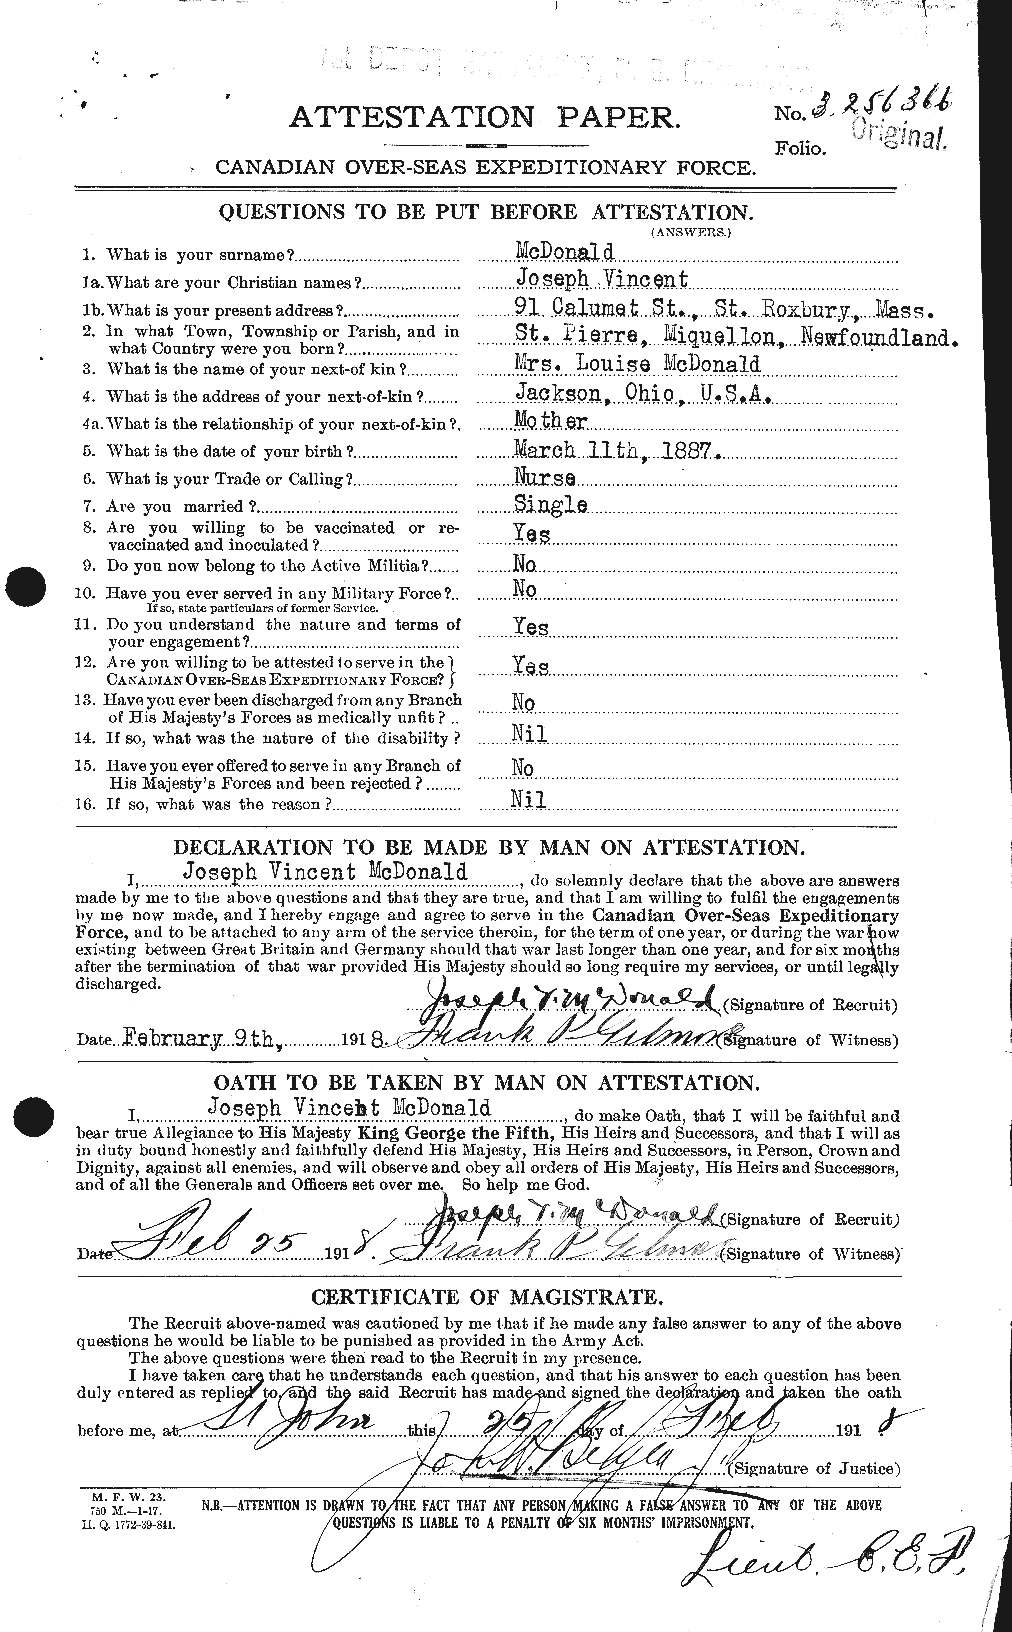 Dossiers du Personnel de la Première Guerre mondiale - CEC 519698a